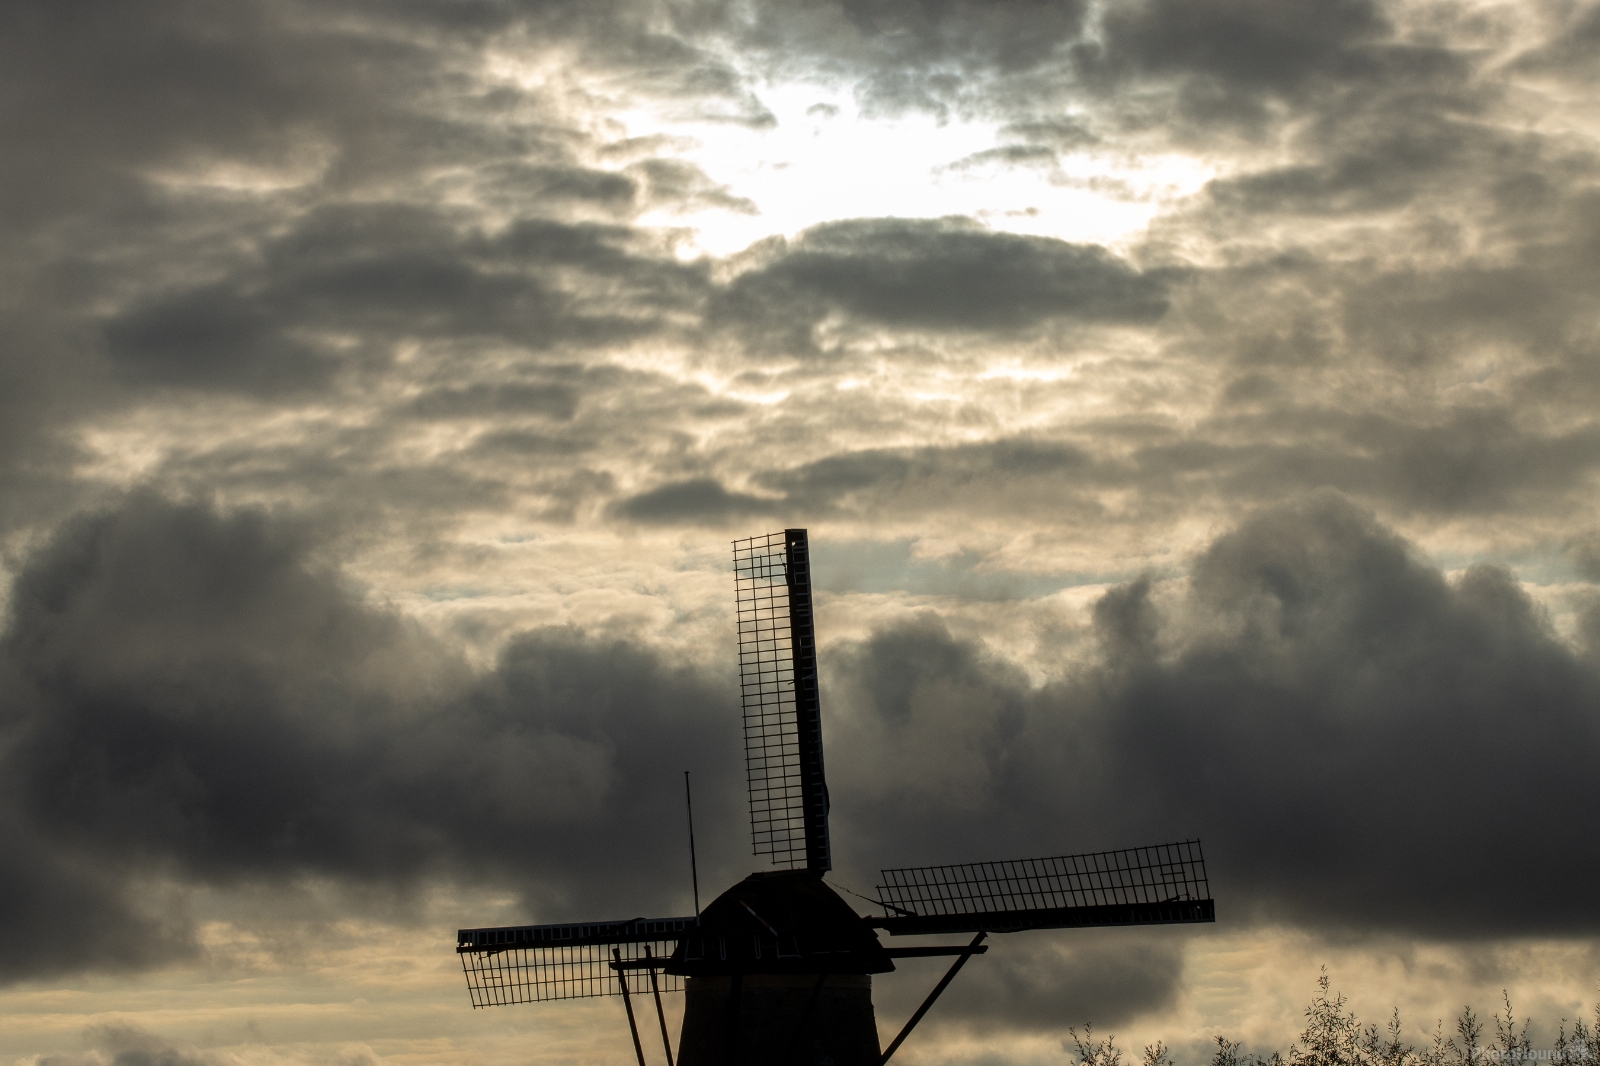 Image of Kinderdijk by Ruud Bijvank